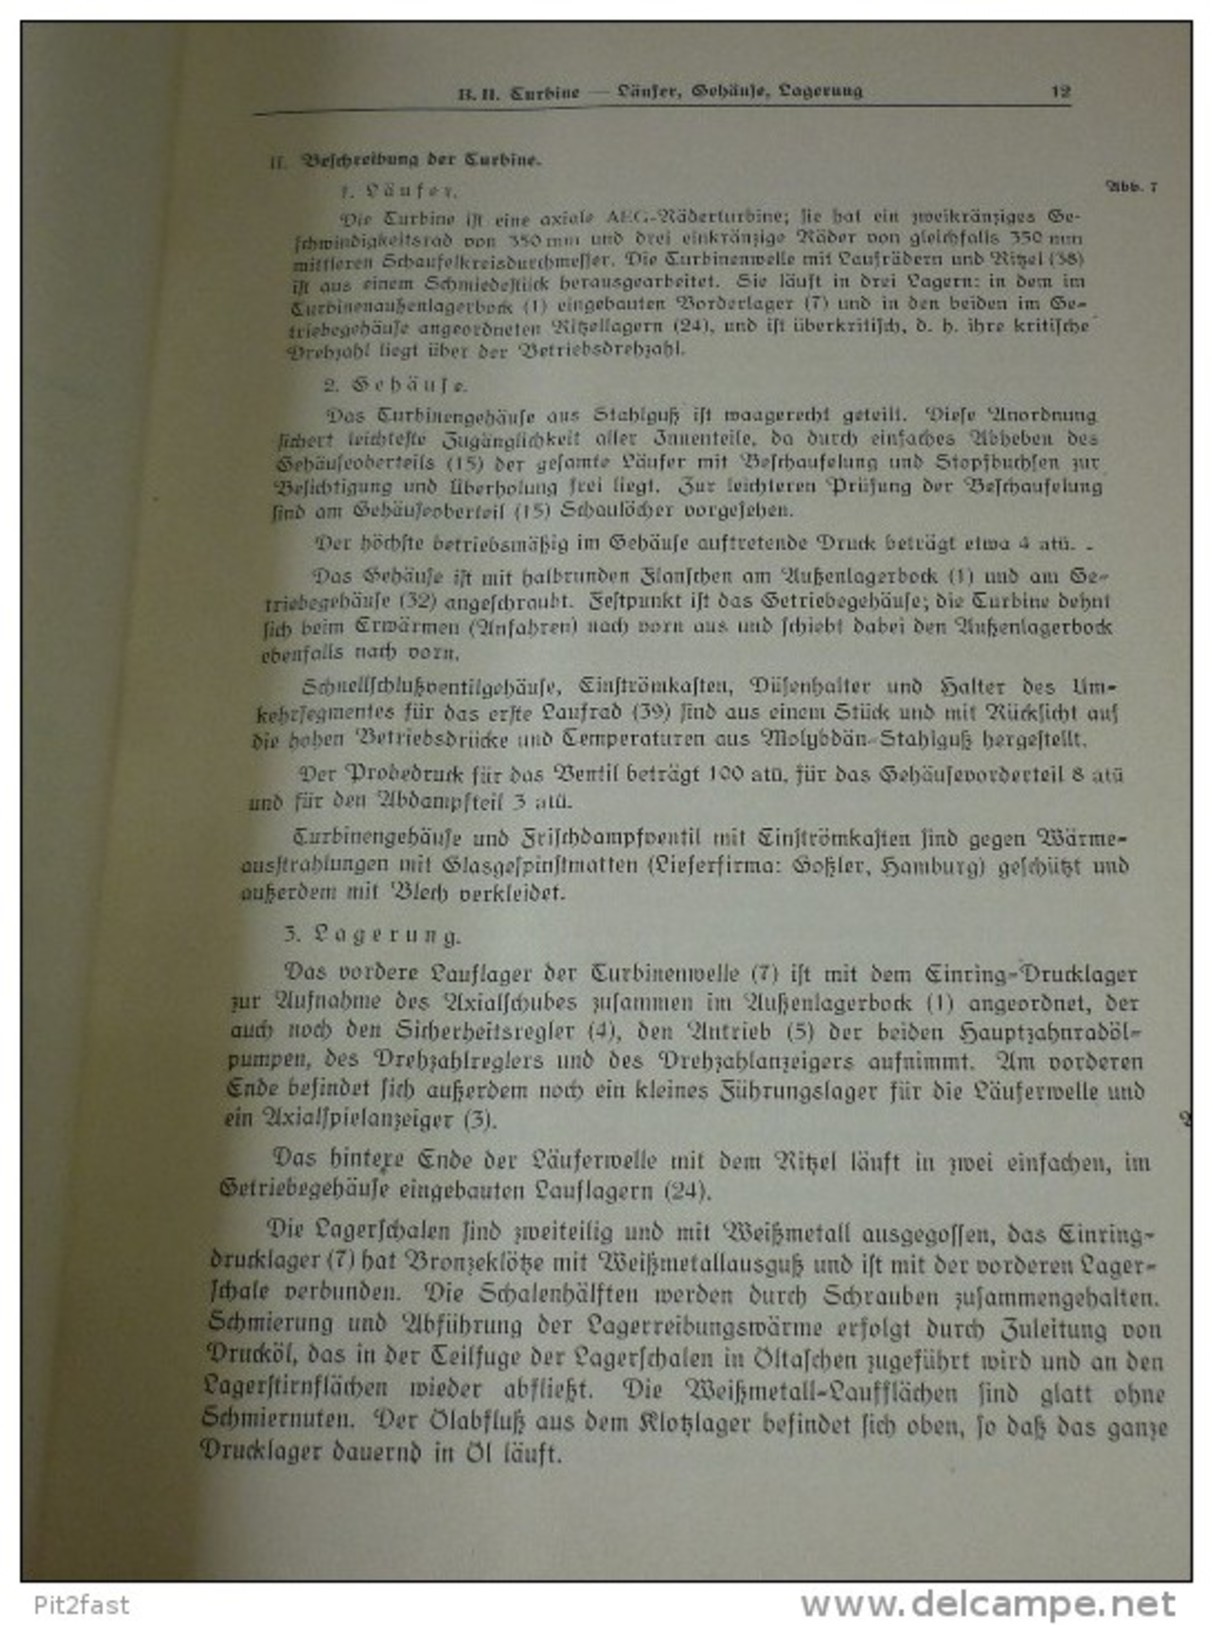 Großes Handbuch Für Schlachtschiff Gneisenau , Kiel 1938 , 460 KW-Gs- Turbo - E-Maschinen , Sehr Viele Klappkarten,  AEG - Boats